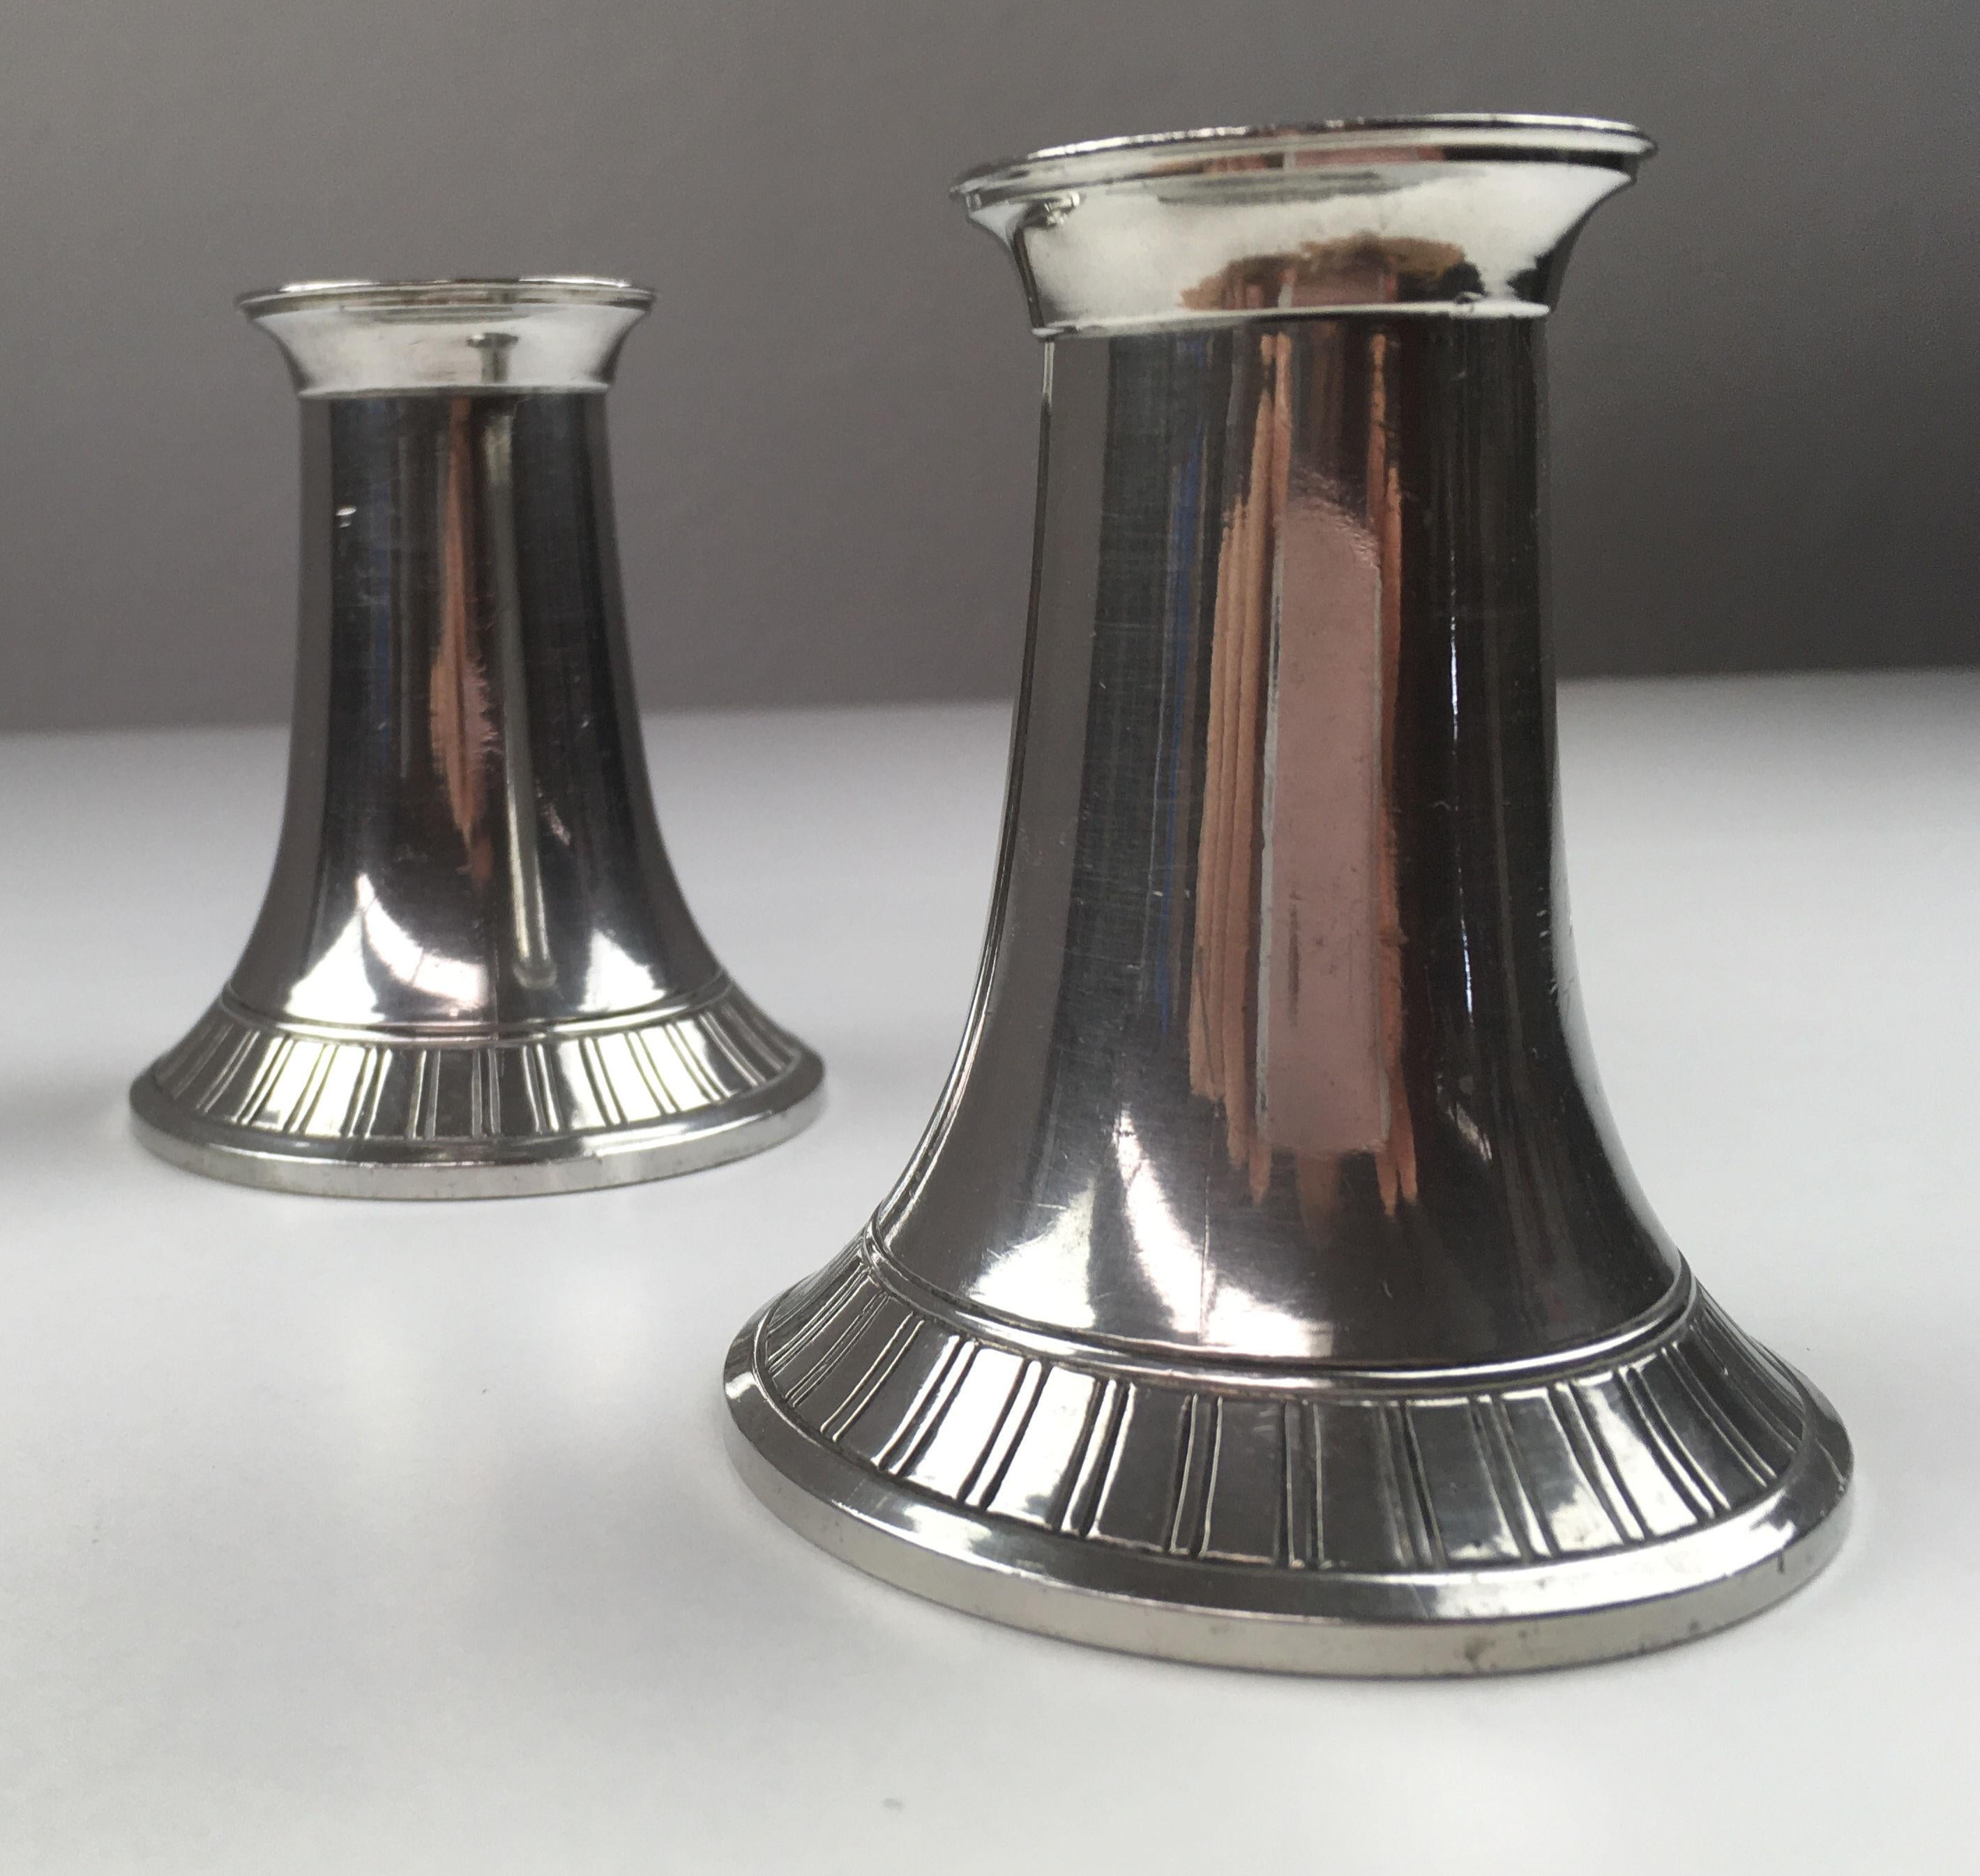 Satz von zwei dänischen Just Andersen Kerzenhaltern aus der Mitte des Jahrhunderts, hergestellt von Just Andersen A/S in den 1940er bis 1950er Jahren.

Die Kerzenhalter sind in gutem Vintage-Zustand und mit Just markiert. Andersens Dreiecksmarke.